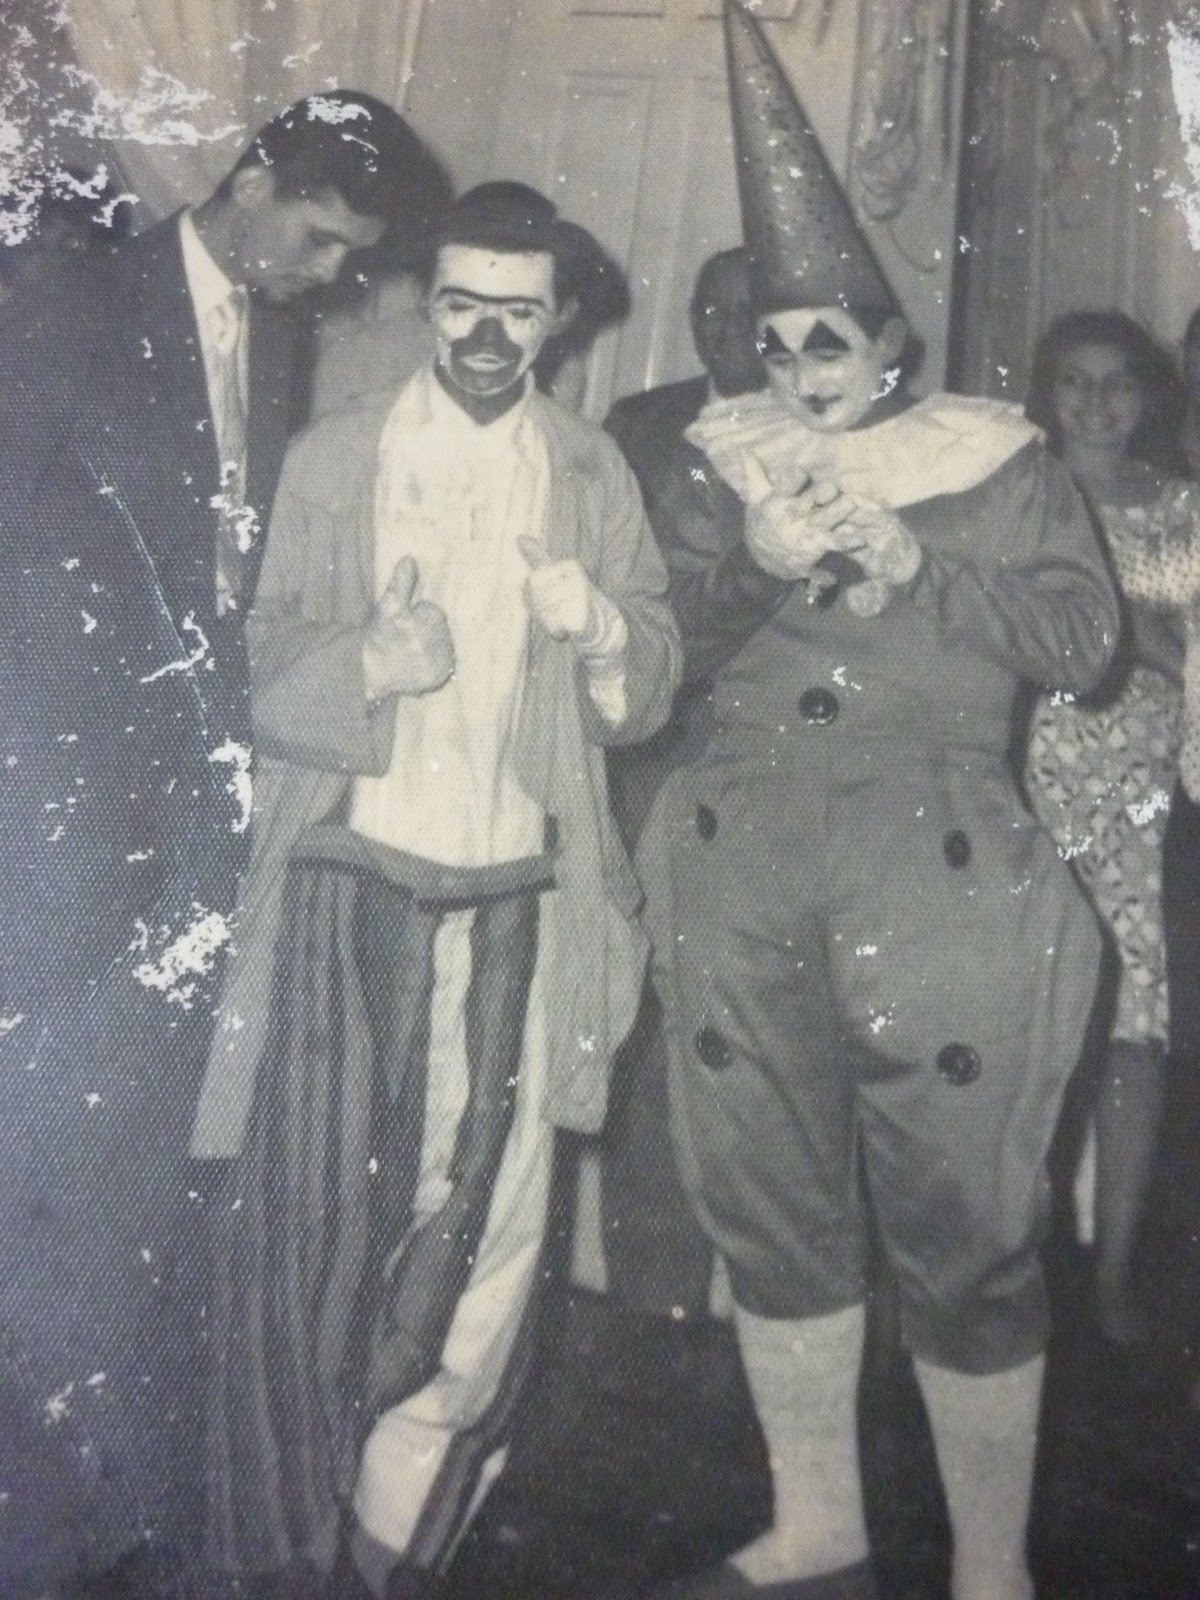 Ao lado de Nequinho, Alecrim comandou o programa "Aí Vem o Circo", entre 1961 e 1967.